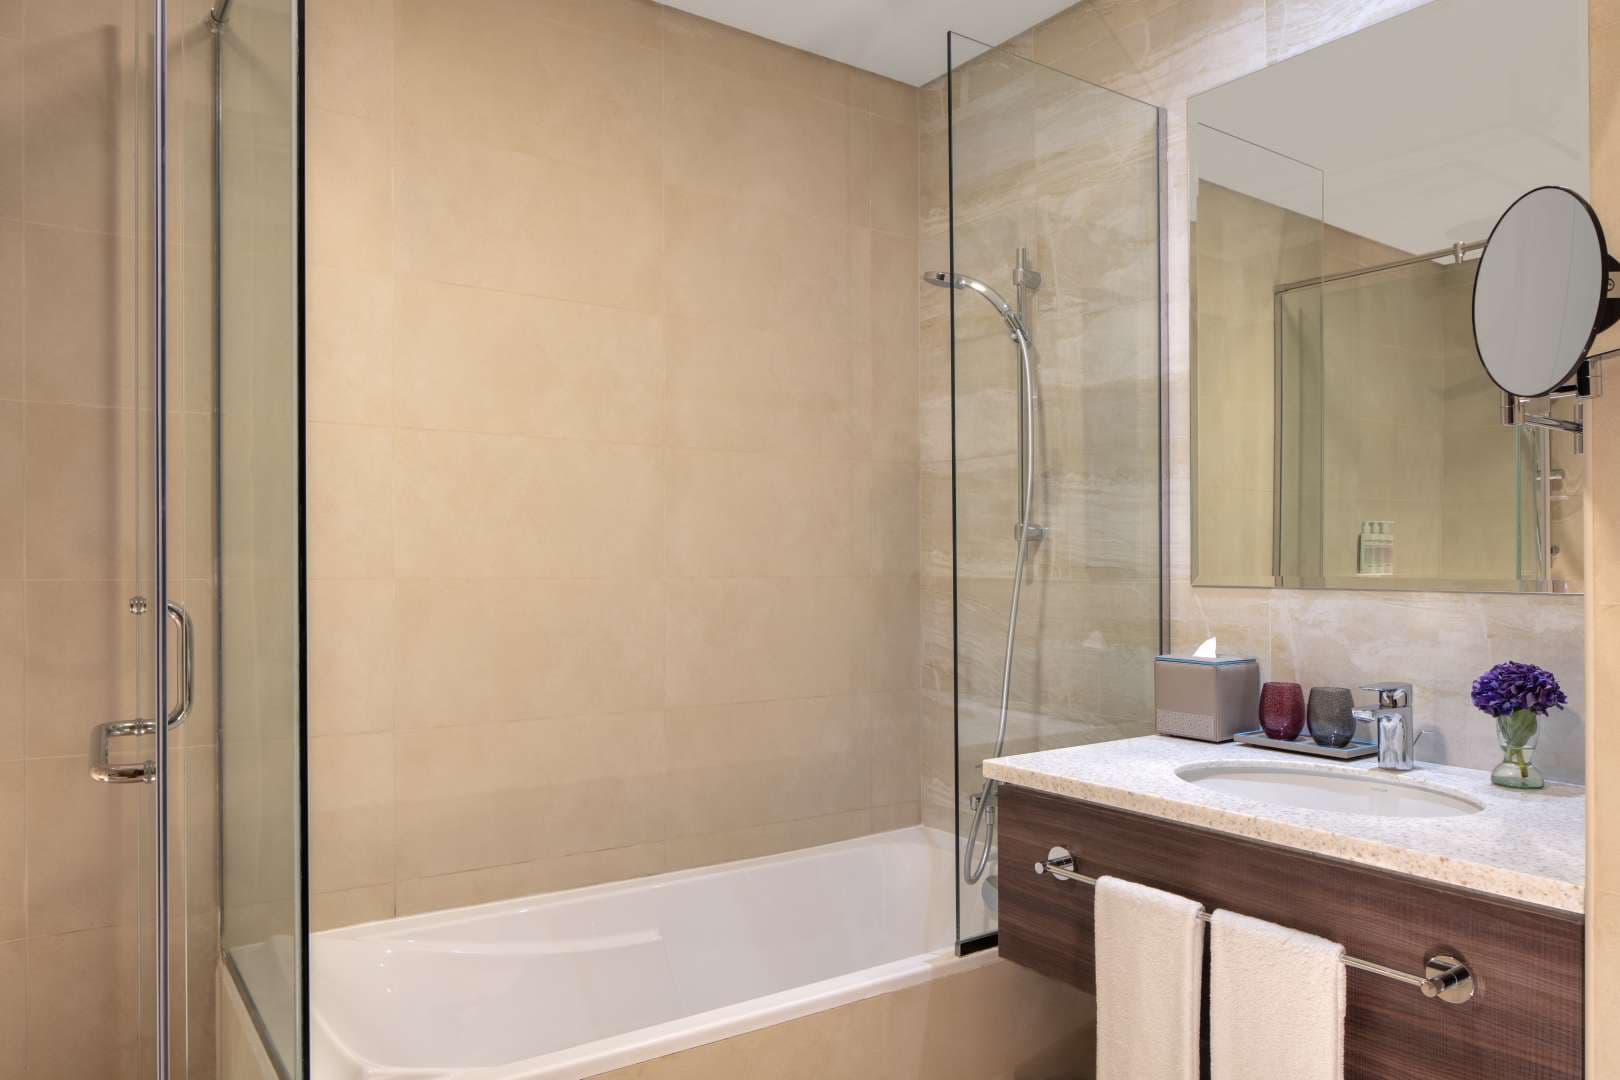 2 Bedroom Apartment For Rent Avani Palm View Hotel Suites Lp05613 C83186049d00580.jpg